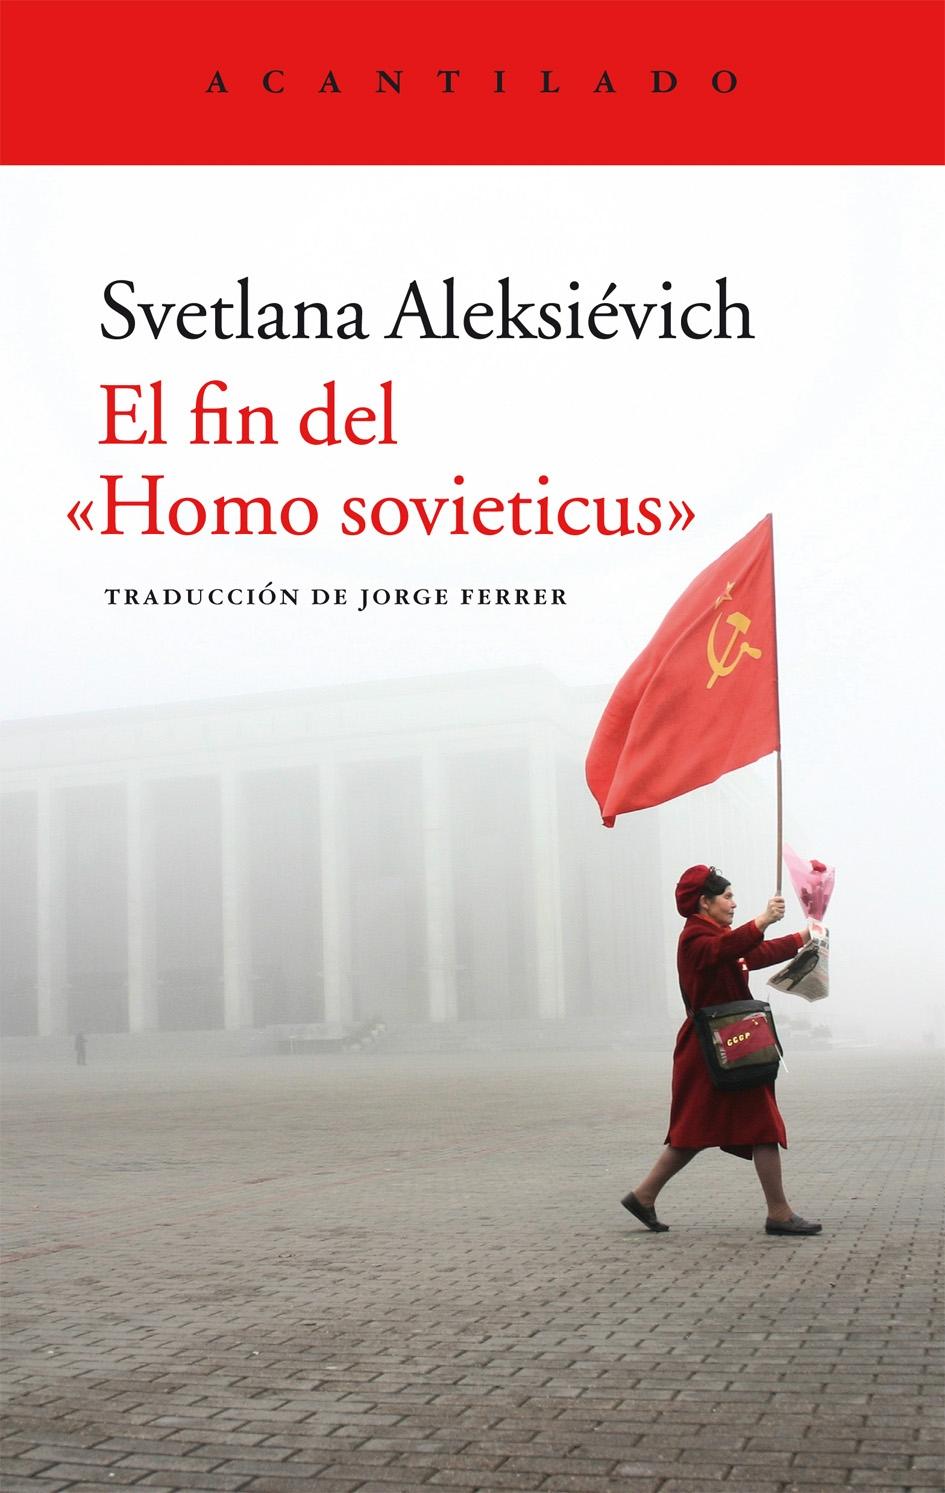 Fin del "Homo sovieticus", El